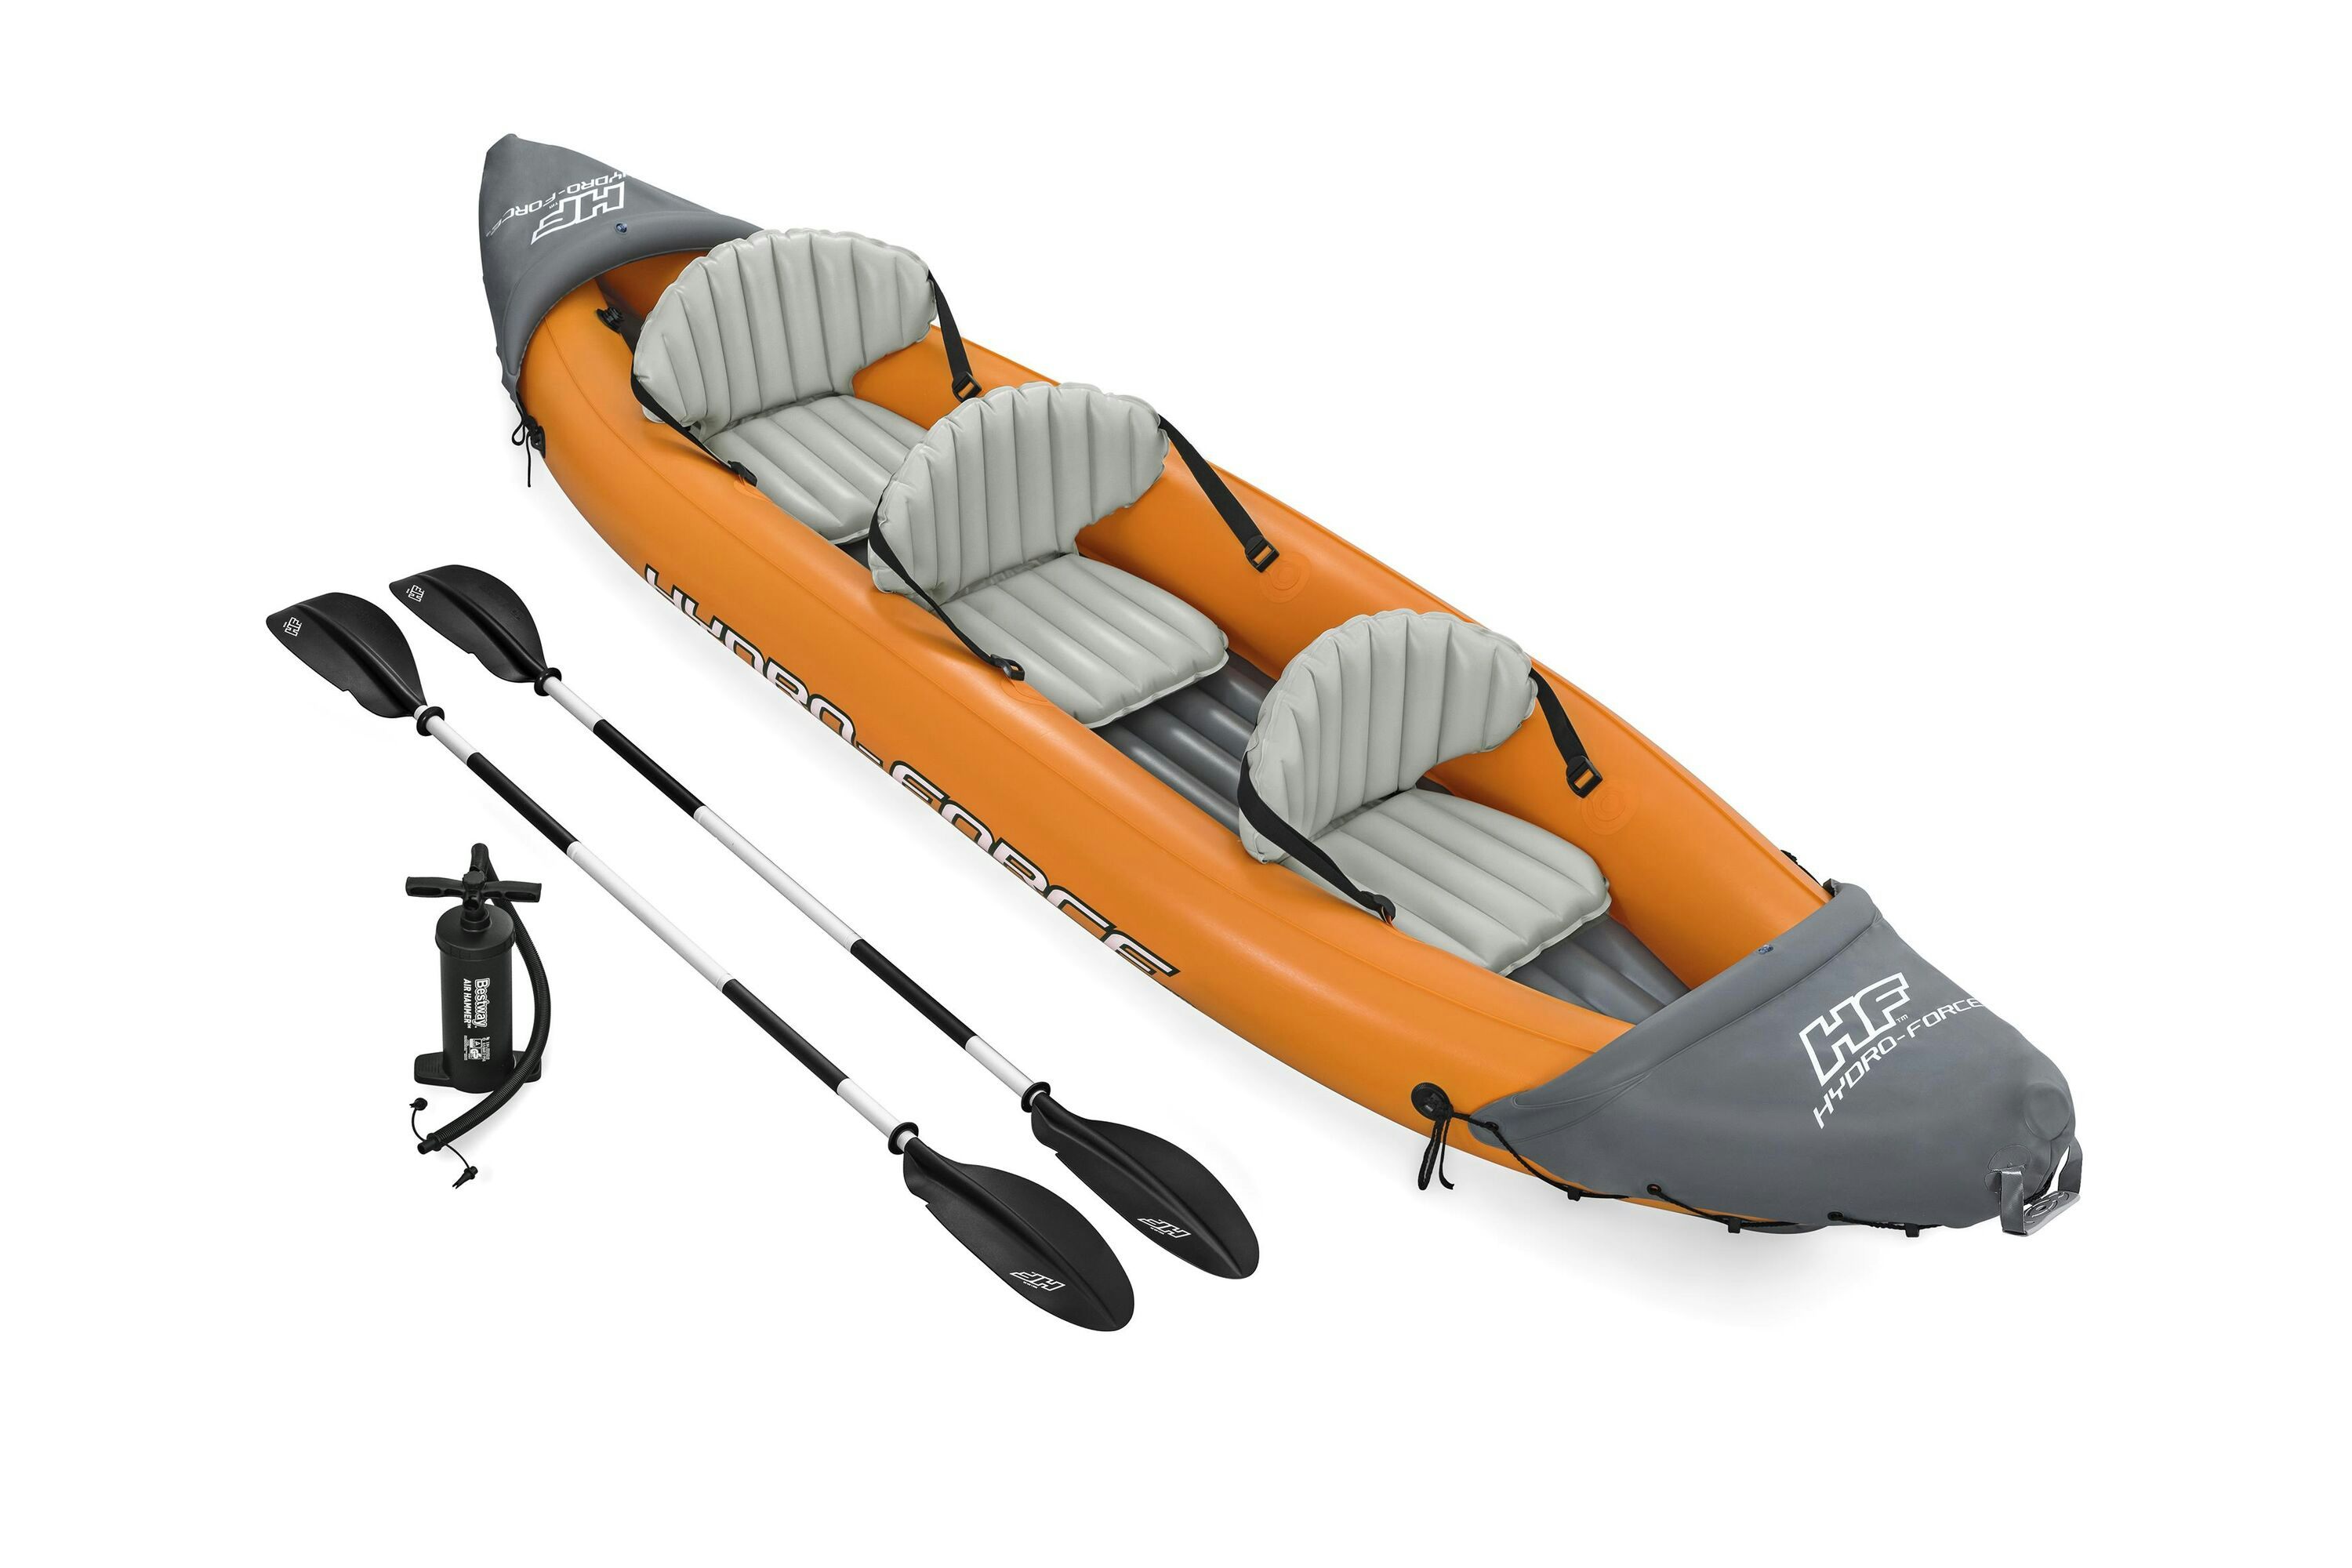 Sports d'eau Kayak gonflable Rapide X3 Hydro-Force™ 381 x 100cm, 3 places, 250 kg max, 2 pagaies, 2 ailerons amovibles et une pompe Bestway 1